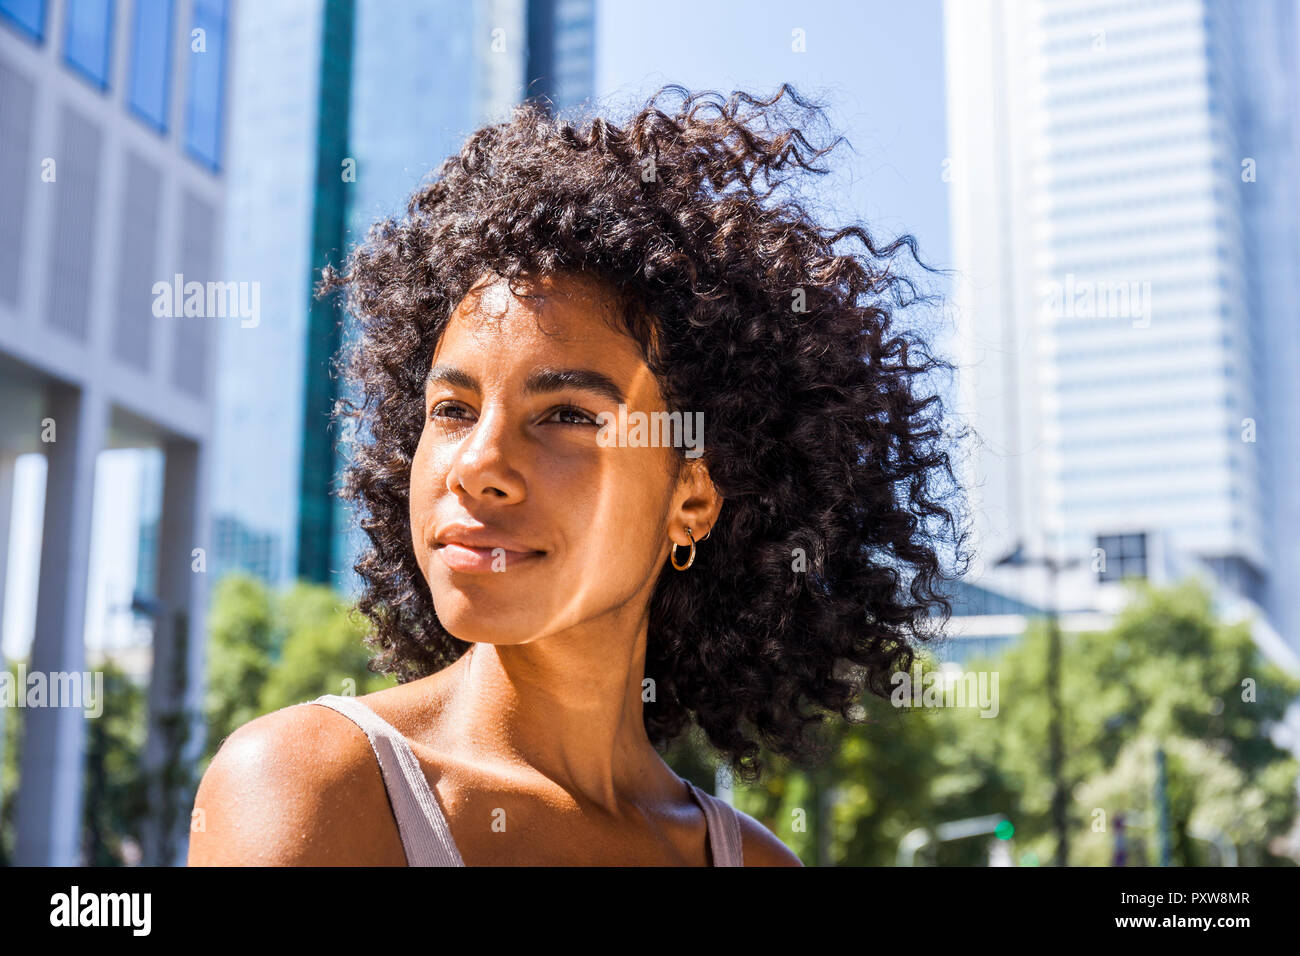 Deutschland, Frankfurt, Portrait von Inhalt junge Frau mit lockigem Haar Stockfoto